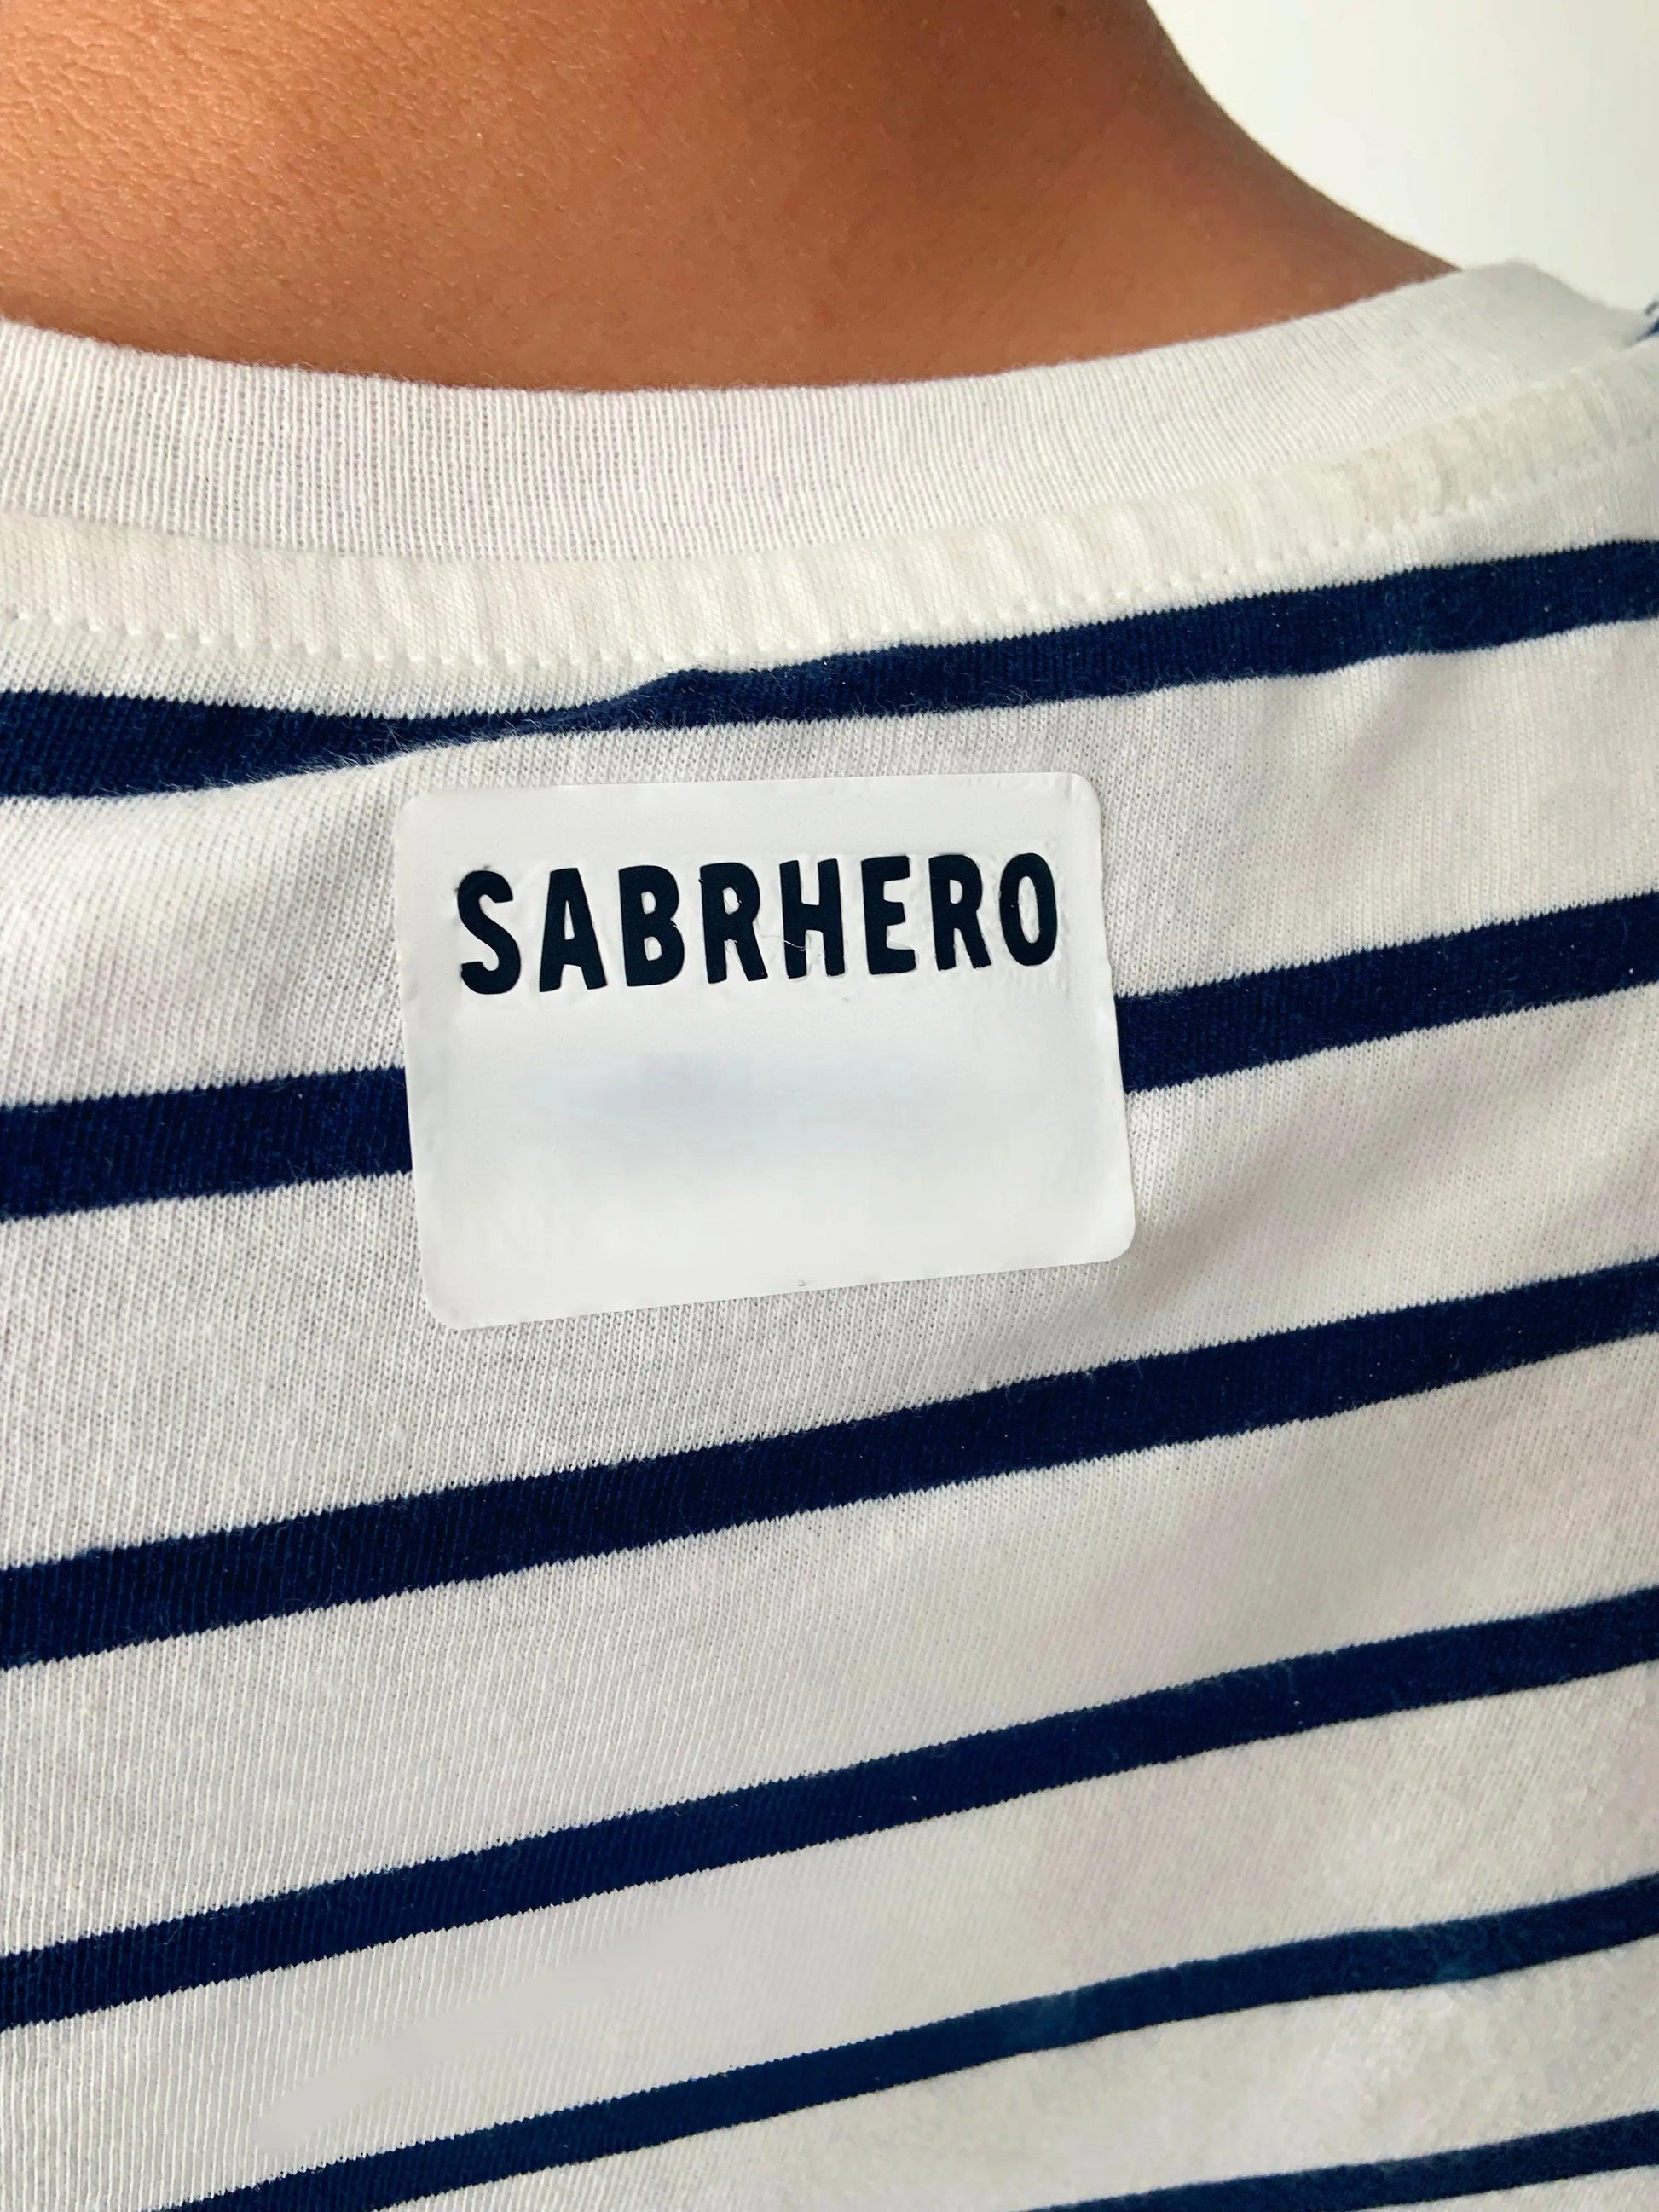 SABRHERO Unisex T-shirt - Luxury tennis apparel SABRHERO